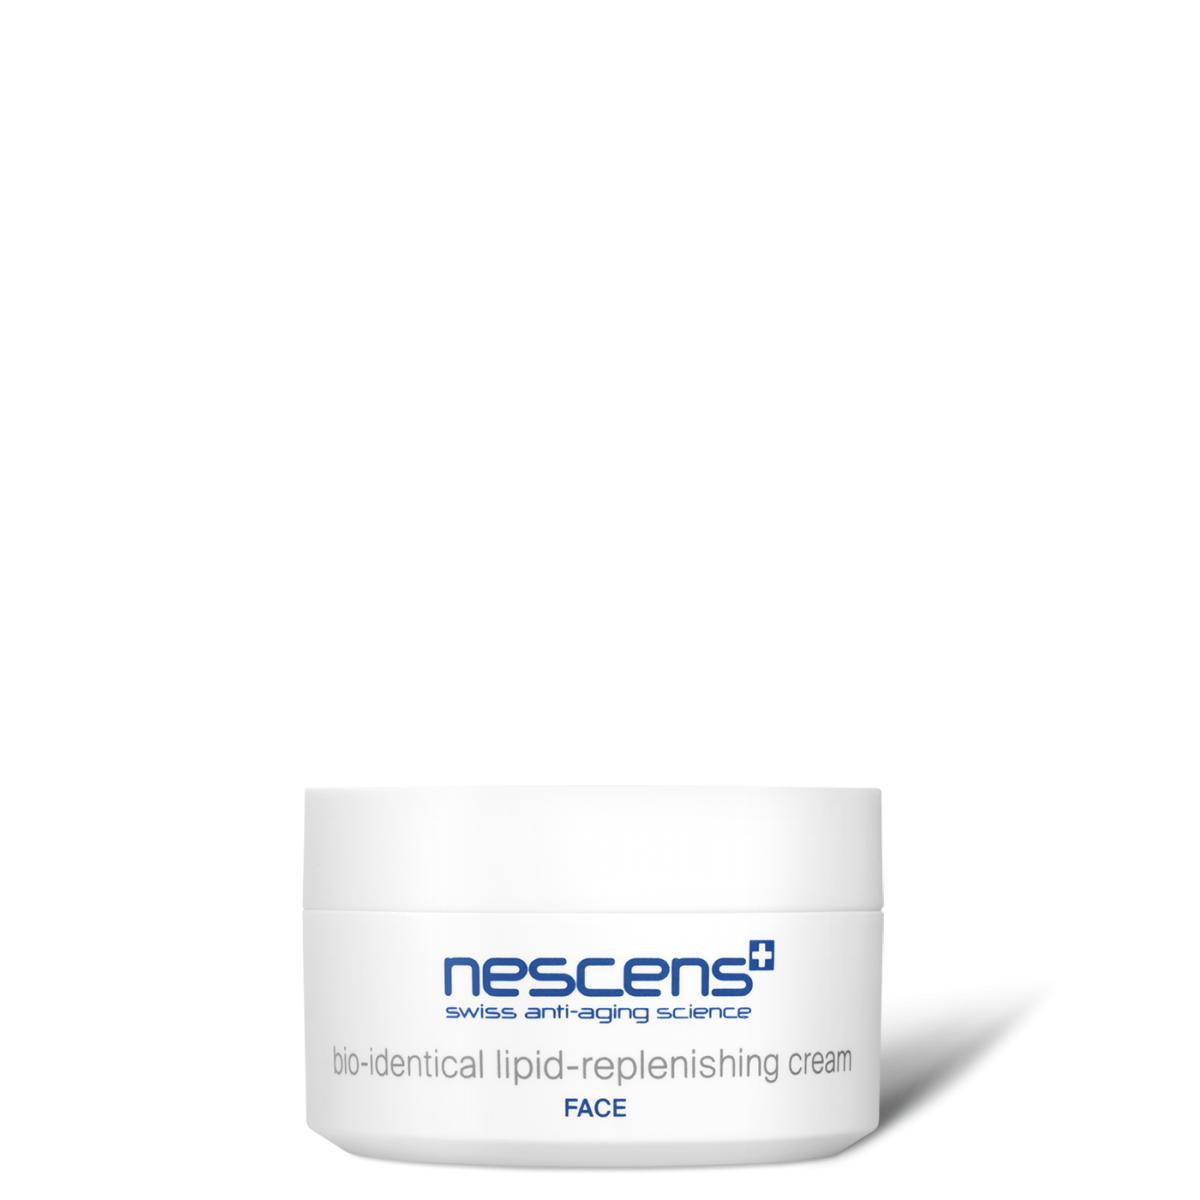 Nescens - Bio-Identical Lipid-Replenishing Cream